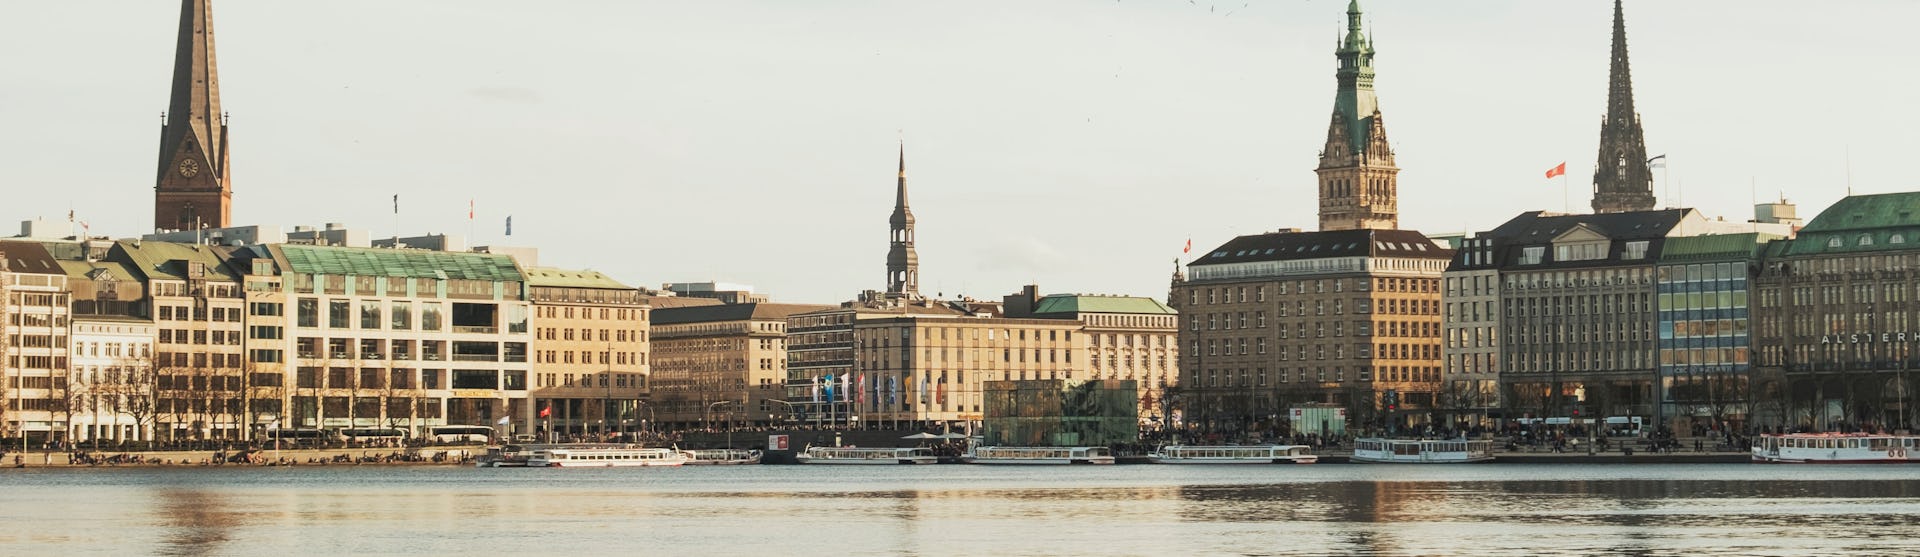 Bild på Hamburg med havet i förgrunden och byggnader i bakgrunden.